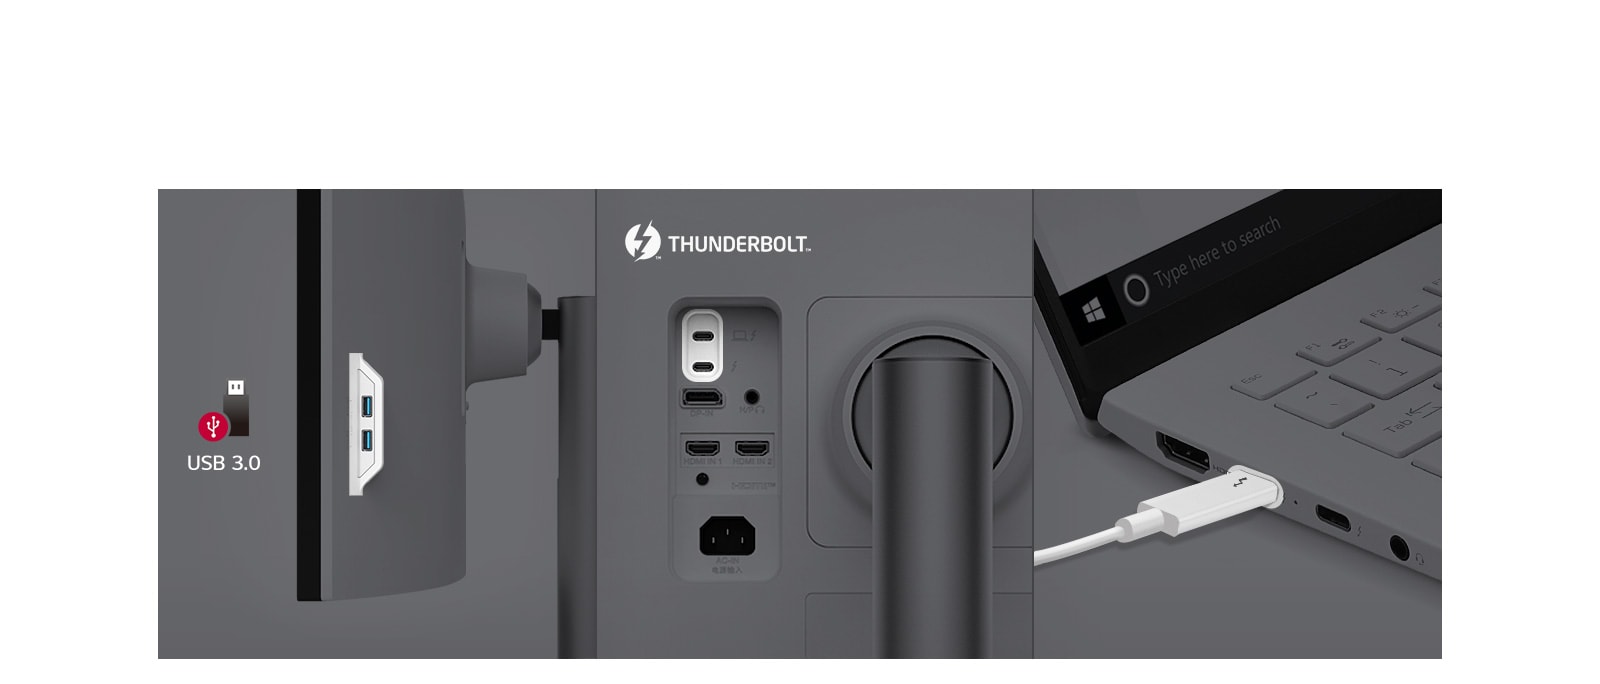 אפשרויות Thunderbolt™ 4 ויציאות מרובות מספקות בקרה וקישוריות קלות.